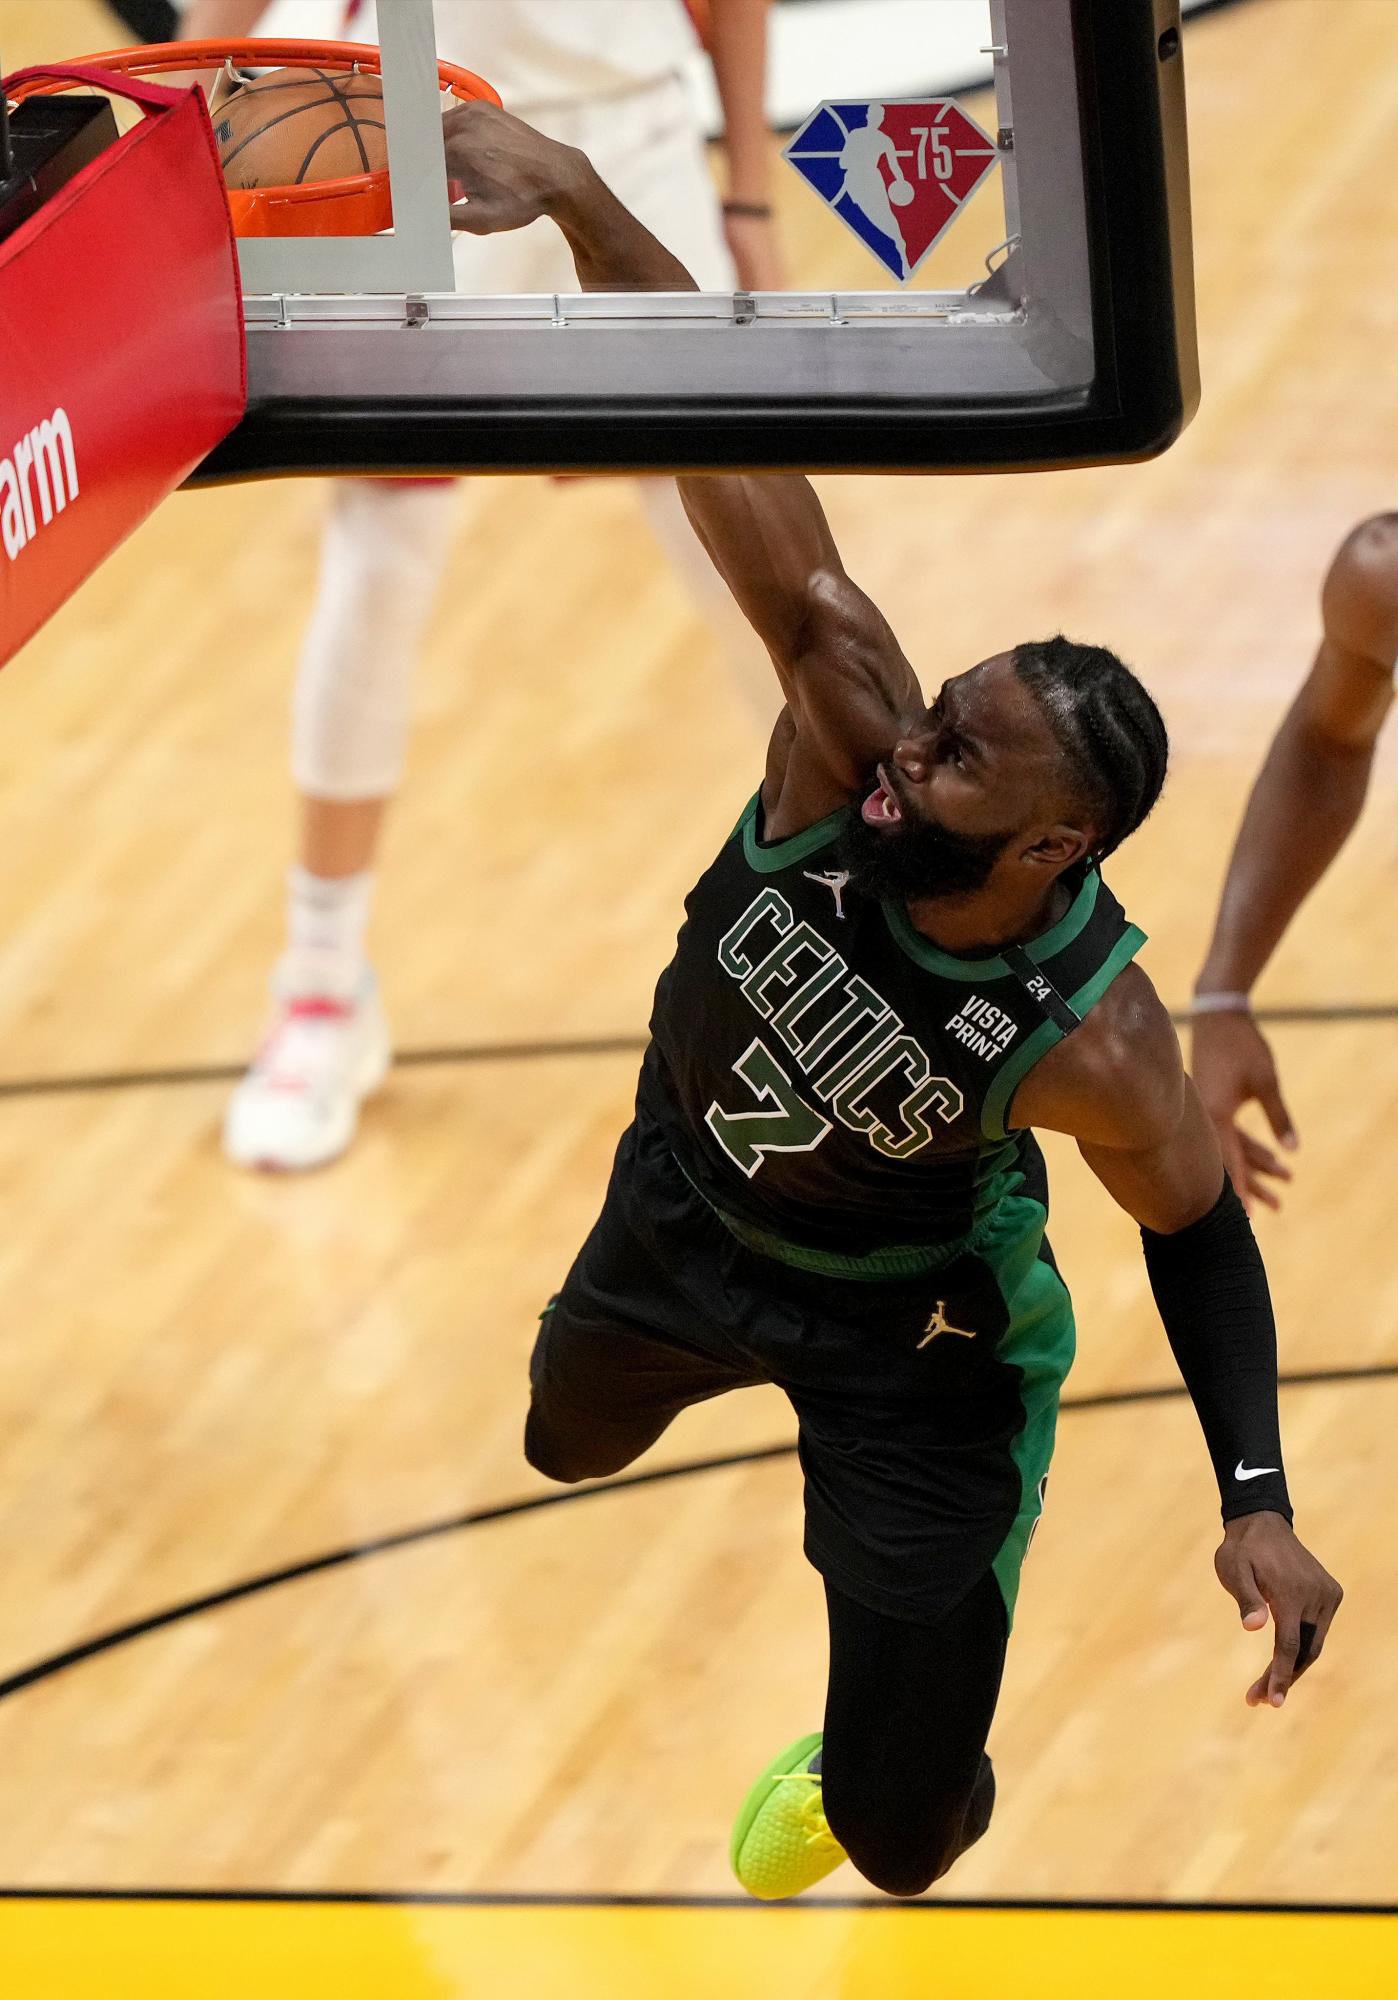 $!La defensa de Boston saca del mapa a Miami y los Celtics quedan a apenas un triunfo de llegar a las Finales de la NBA